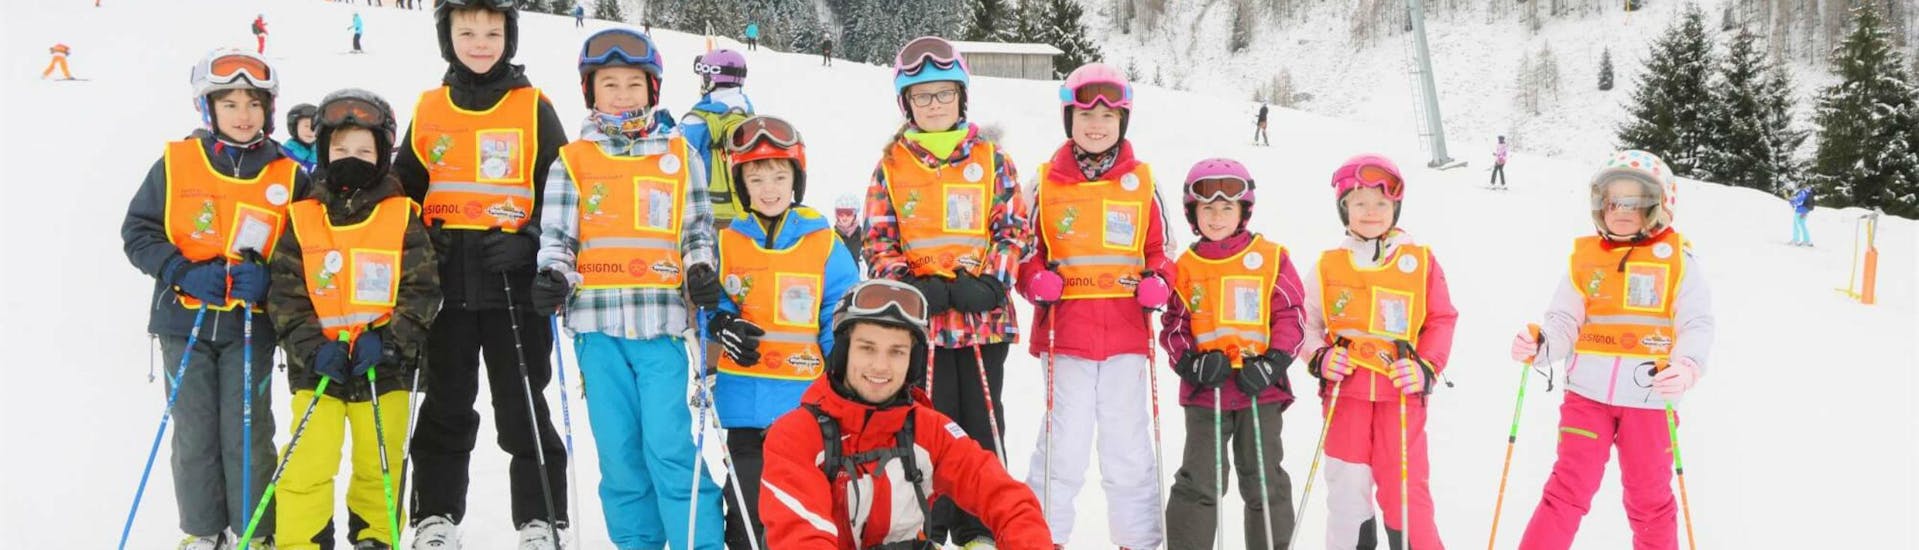 Lezioni di sci per bambini a partire da 15 anni per avanzati.